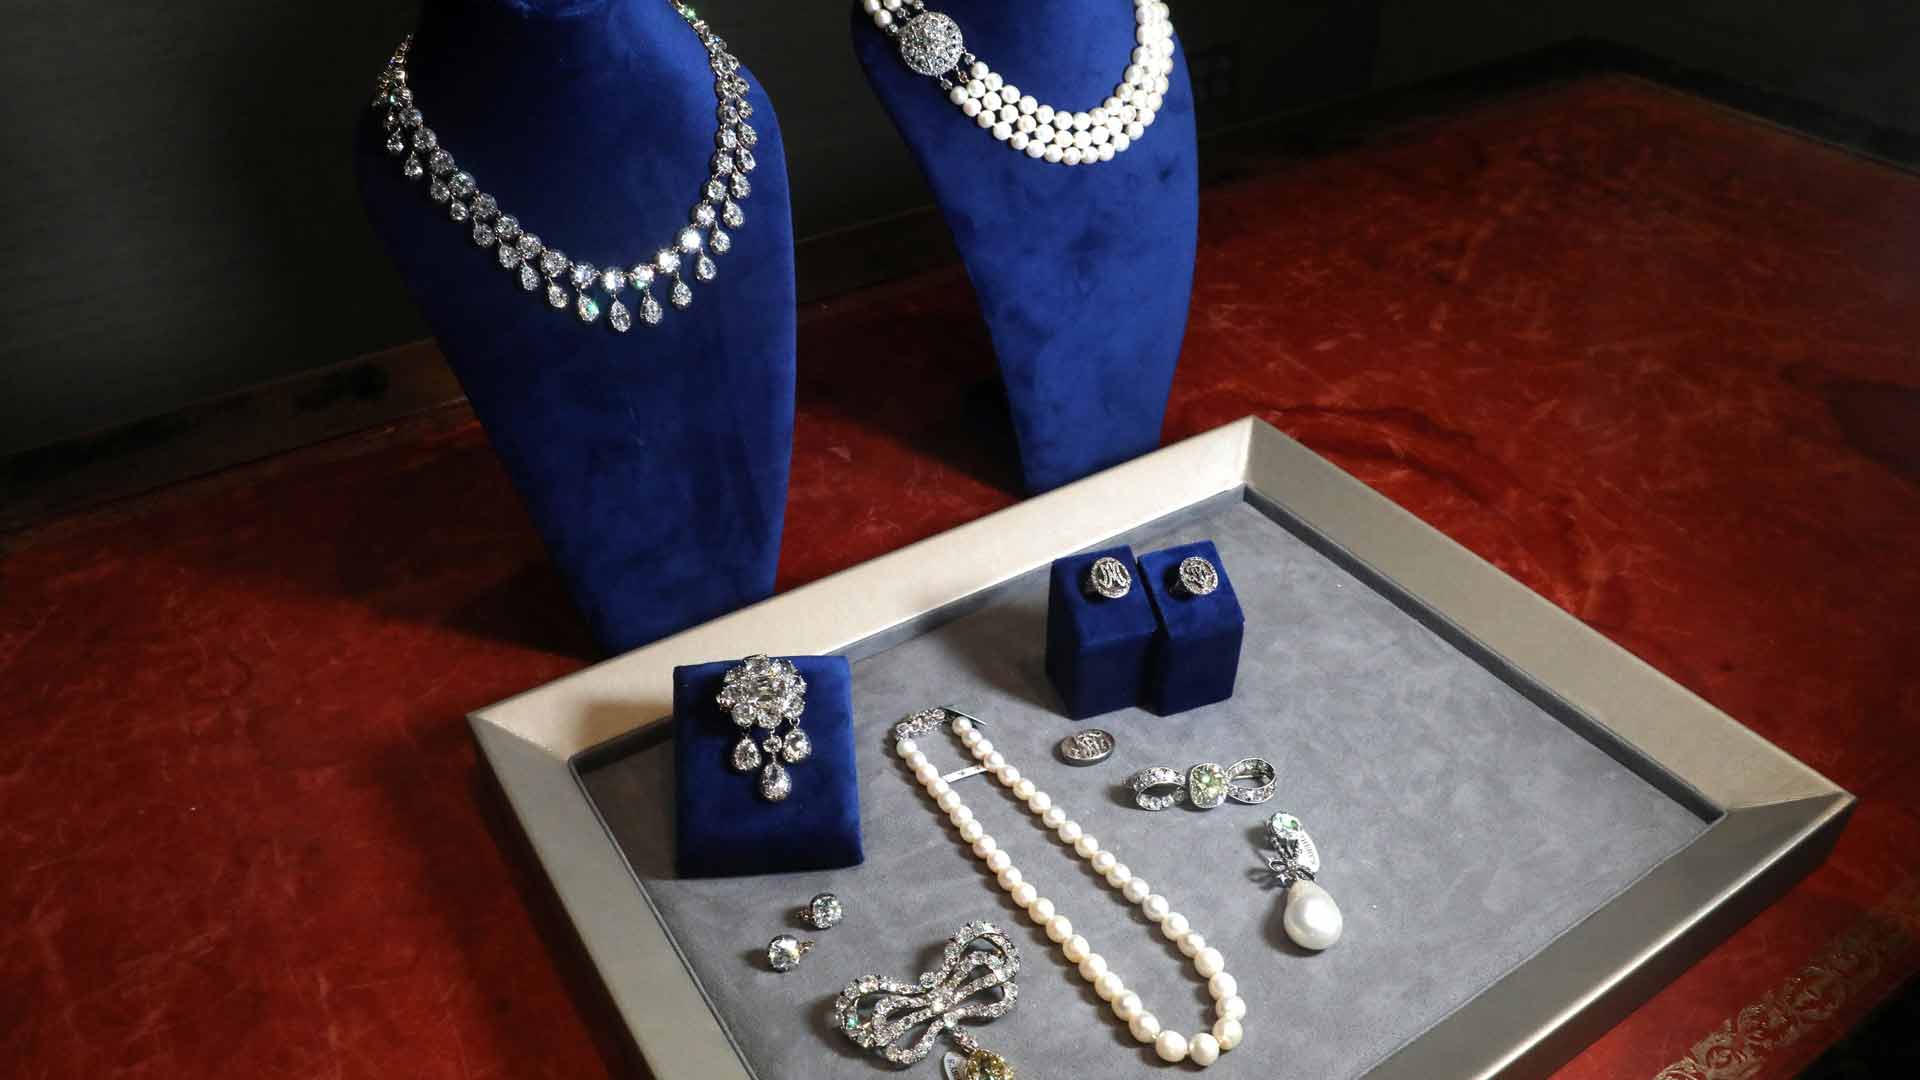 Las joyas de María Antonieta, ocultas durante más de 200 años, salen a subasta